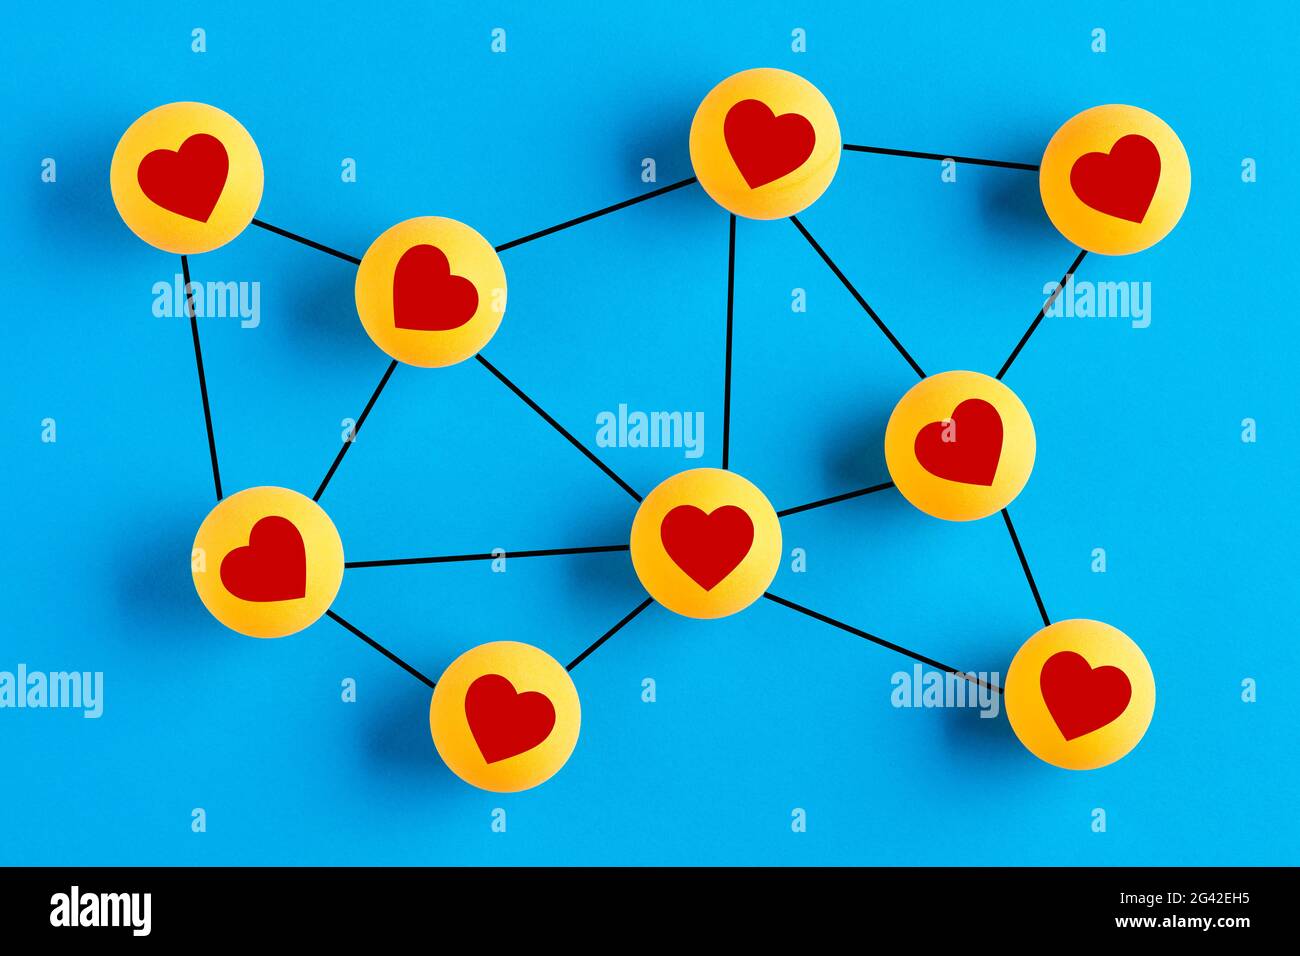 Icone d'amore su palle da ping-pong collegate tra loro che rappresentano una rete sociale. Interazione di rete sociale o concetto di datazione in linea. Foto Stock